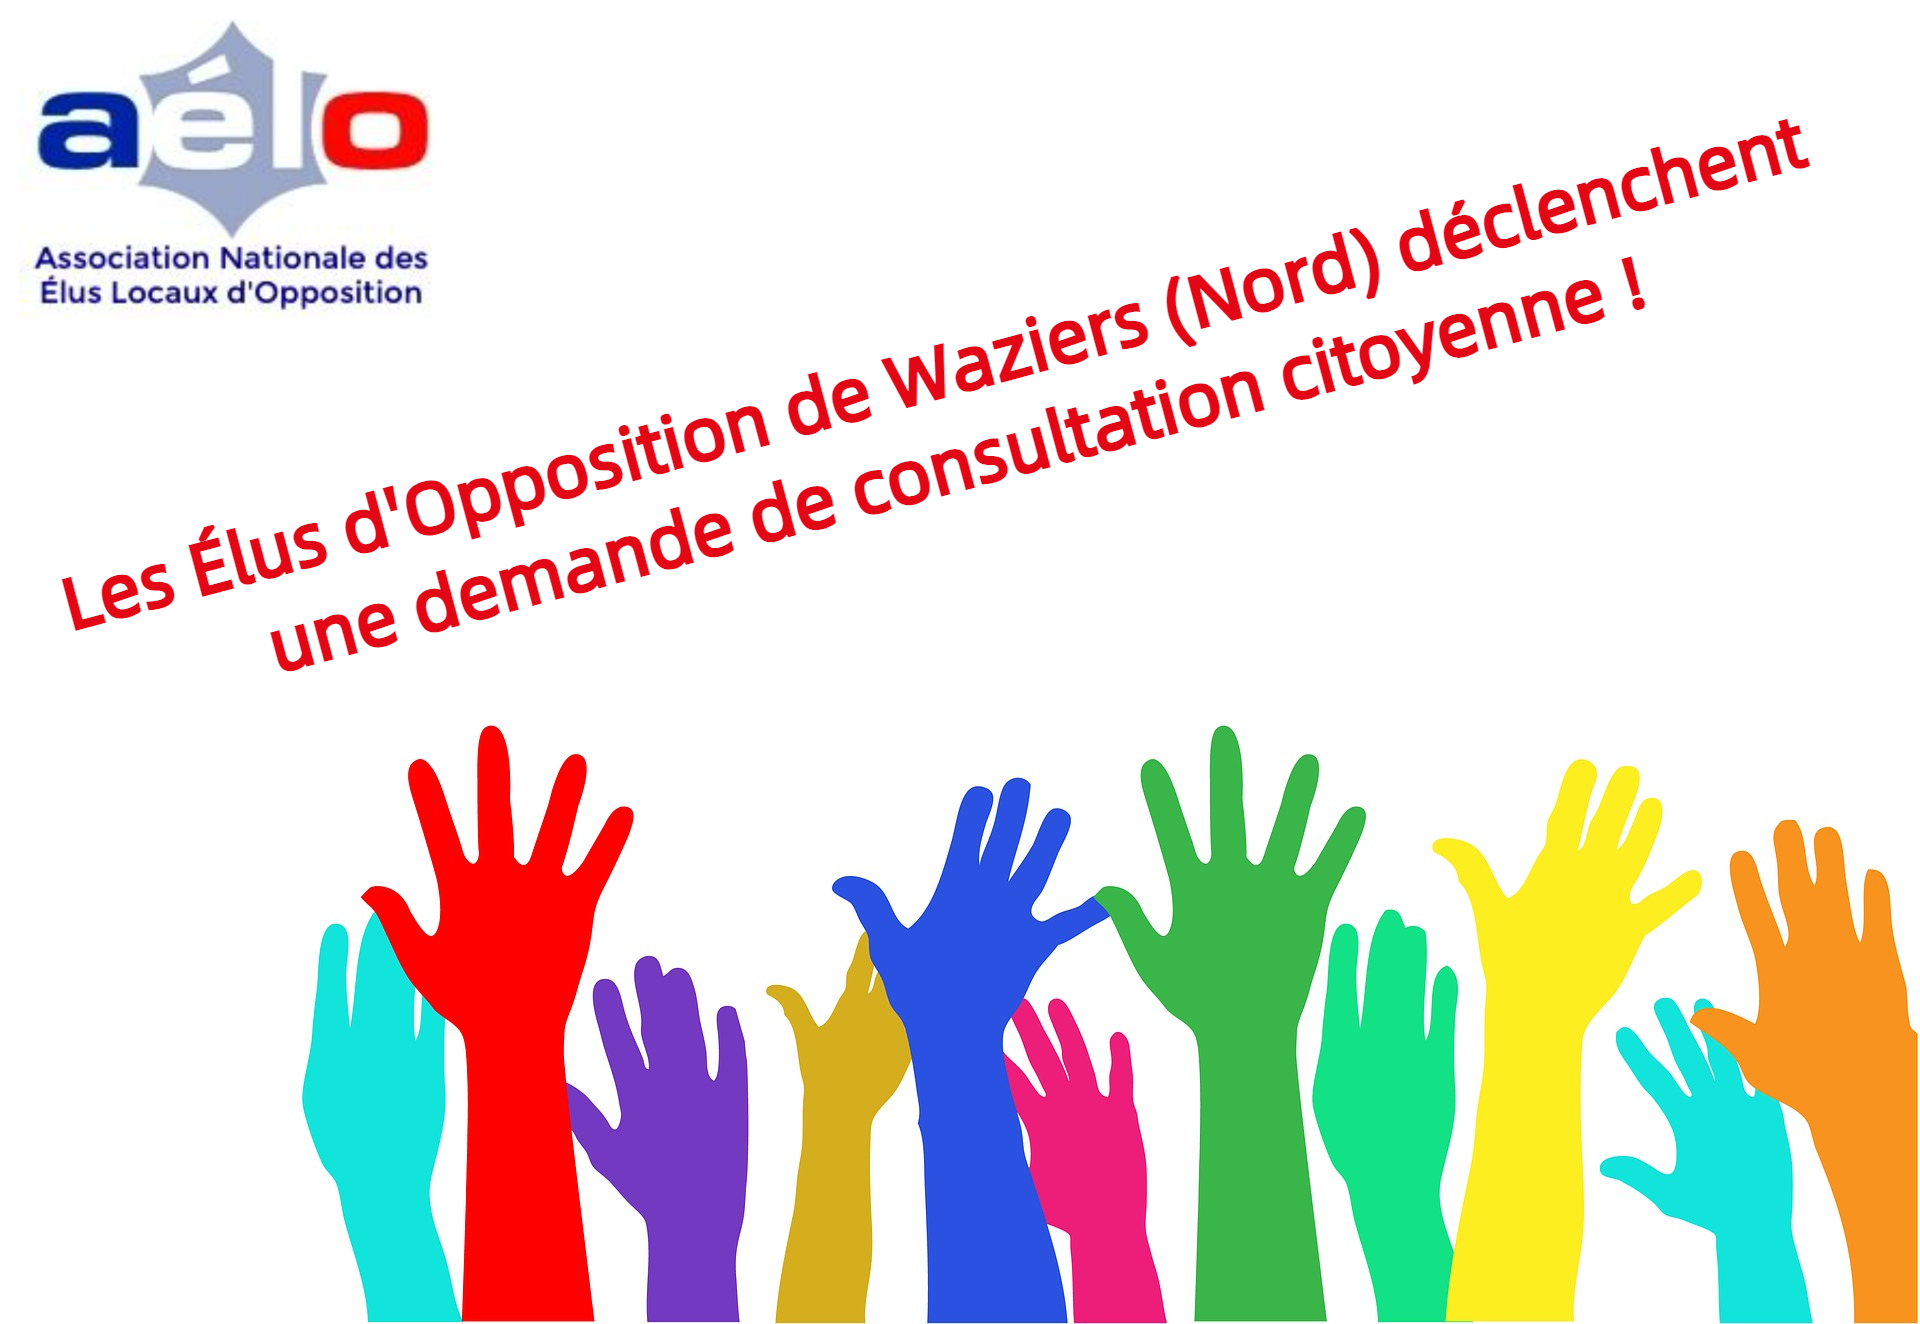 Les élus d’opposition de Waziers (59) déclenchent une demande de consultation citoyenne